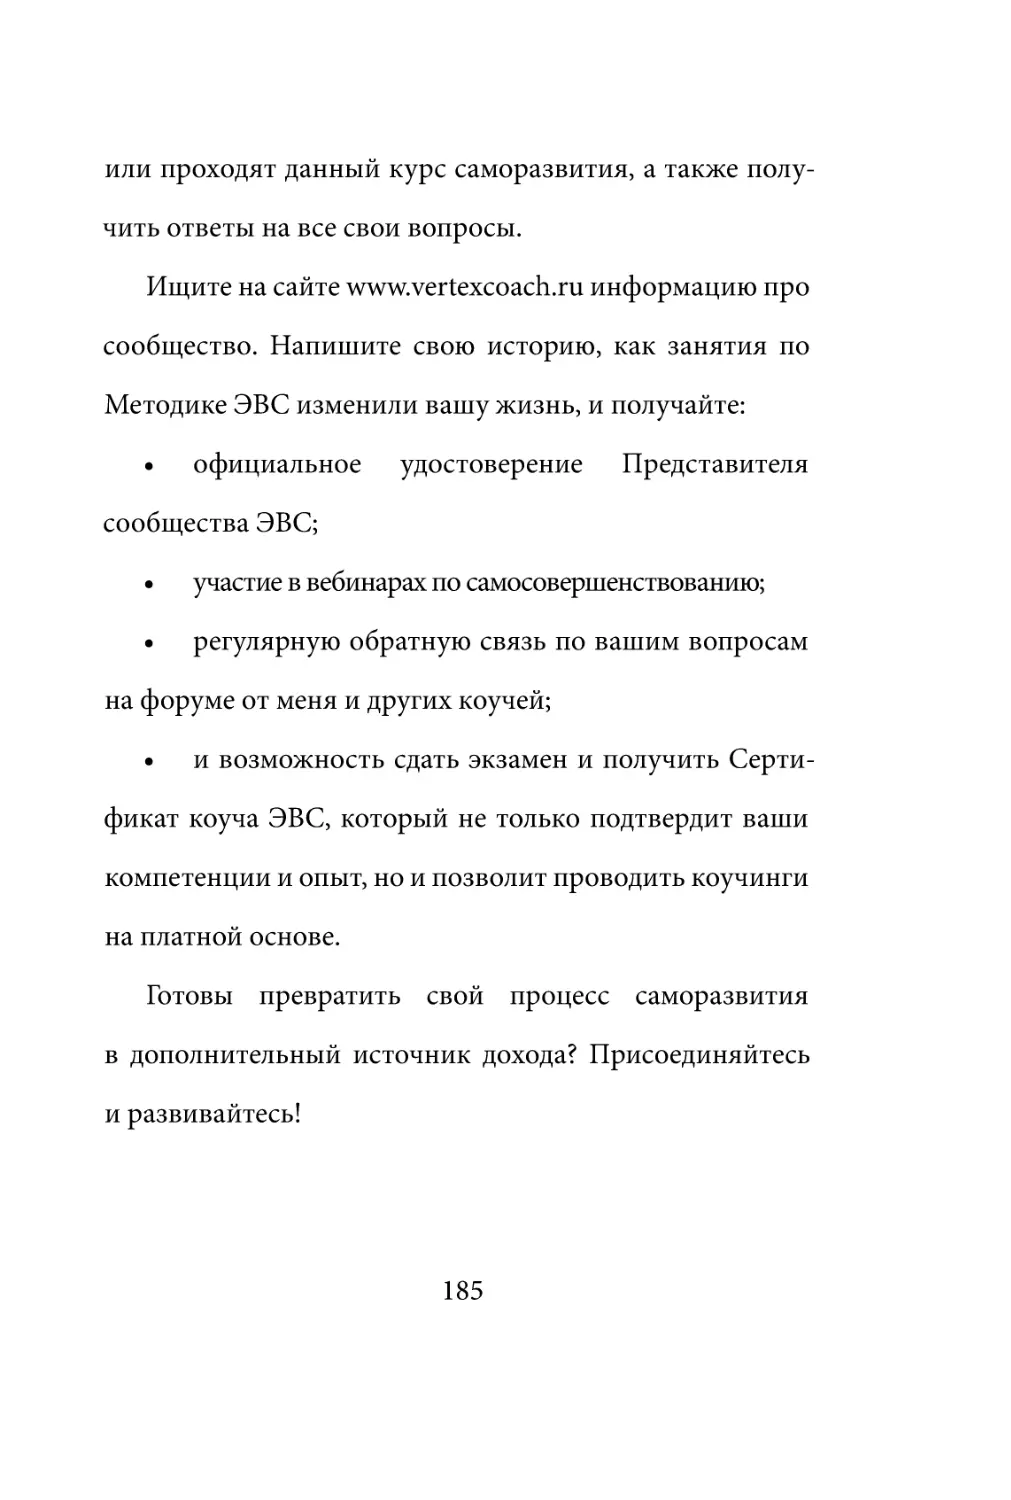 Sergey_Filippov_Dnevnik_samorazvitia_Evolyutsia_Vnutrennego_Sostoyania_185.pdf (p.185)